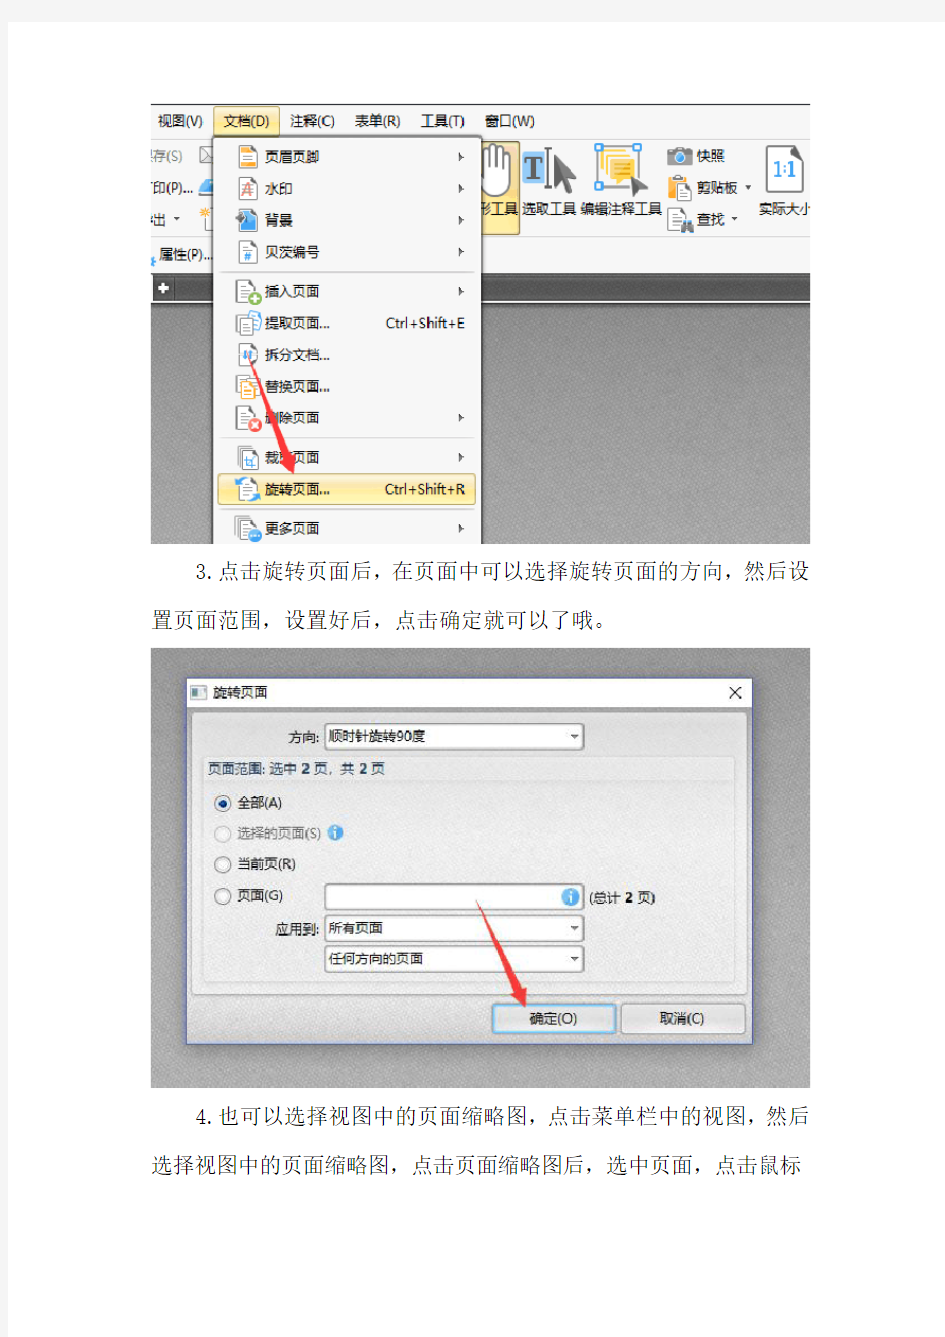 PDF编辑器中文版怎样旋转PDF页面方向